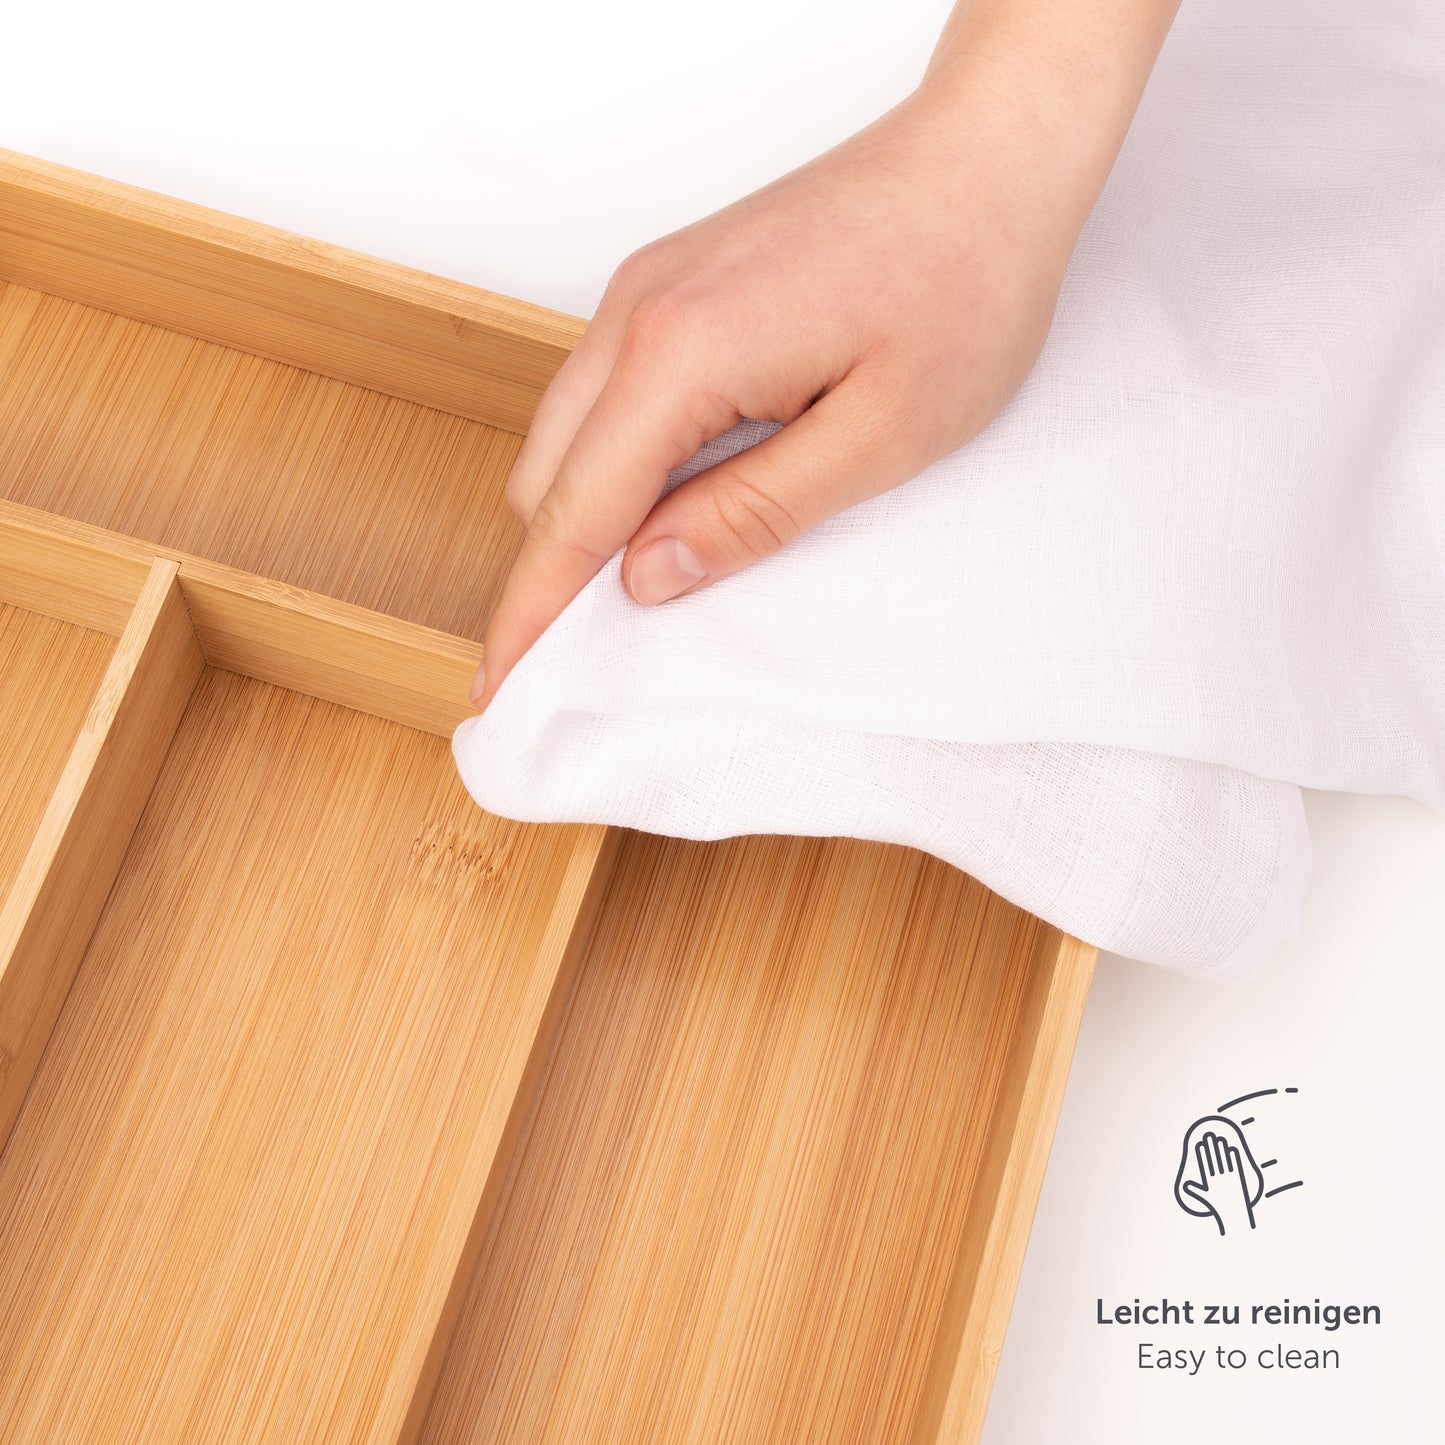 Hand wischt einen Bambusbesteckkasten mit einem Tuch ab, Symbol für einfache Reinigung sichtbar.